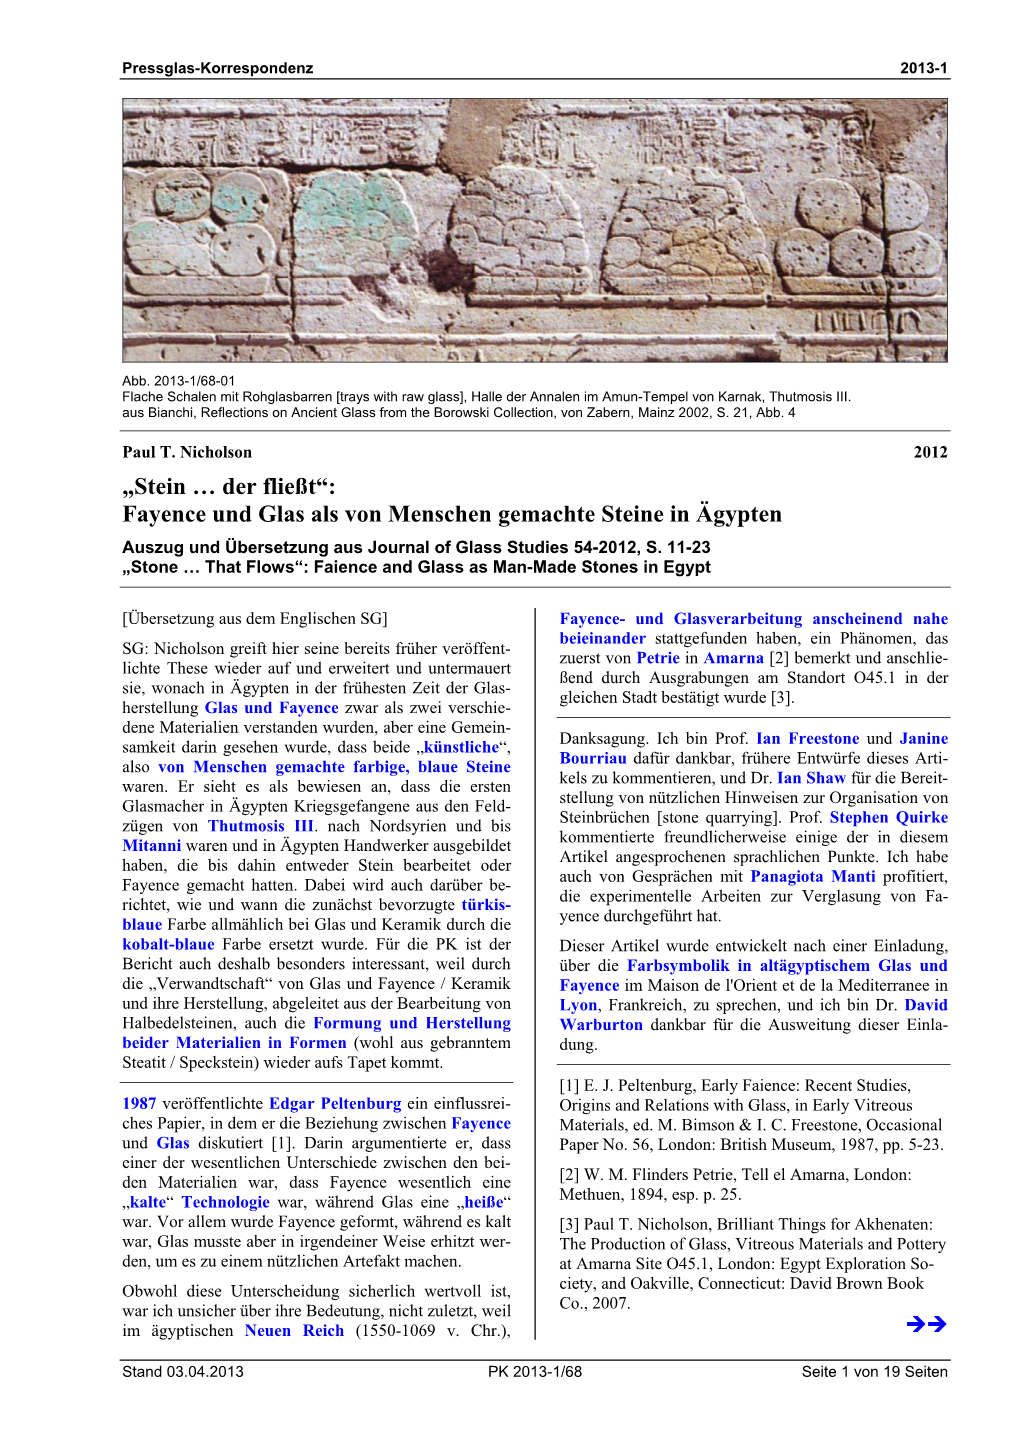 Fayence Und Glas Als Von Menschen Gemachte Steine in Ägypten Auszug Und Übersetzung Aus Journal of Glass Studies 54-2012, S